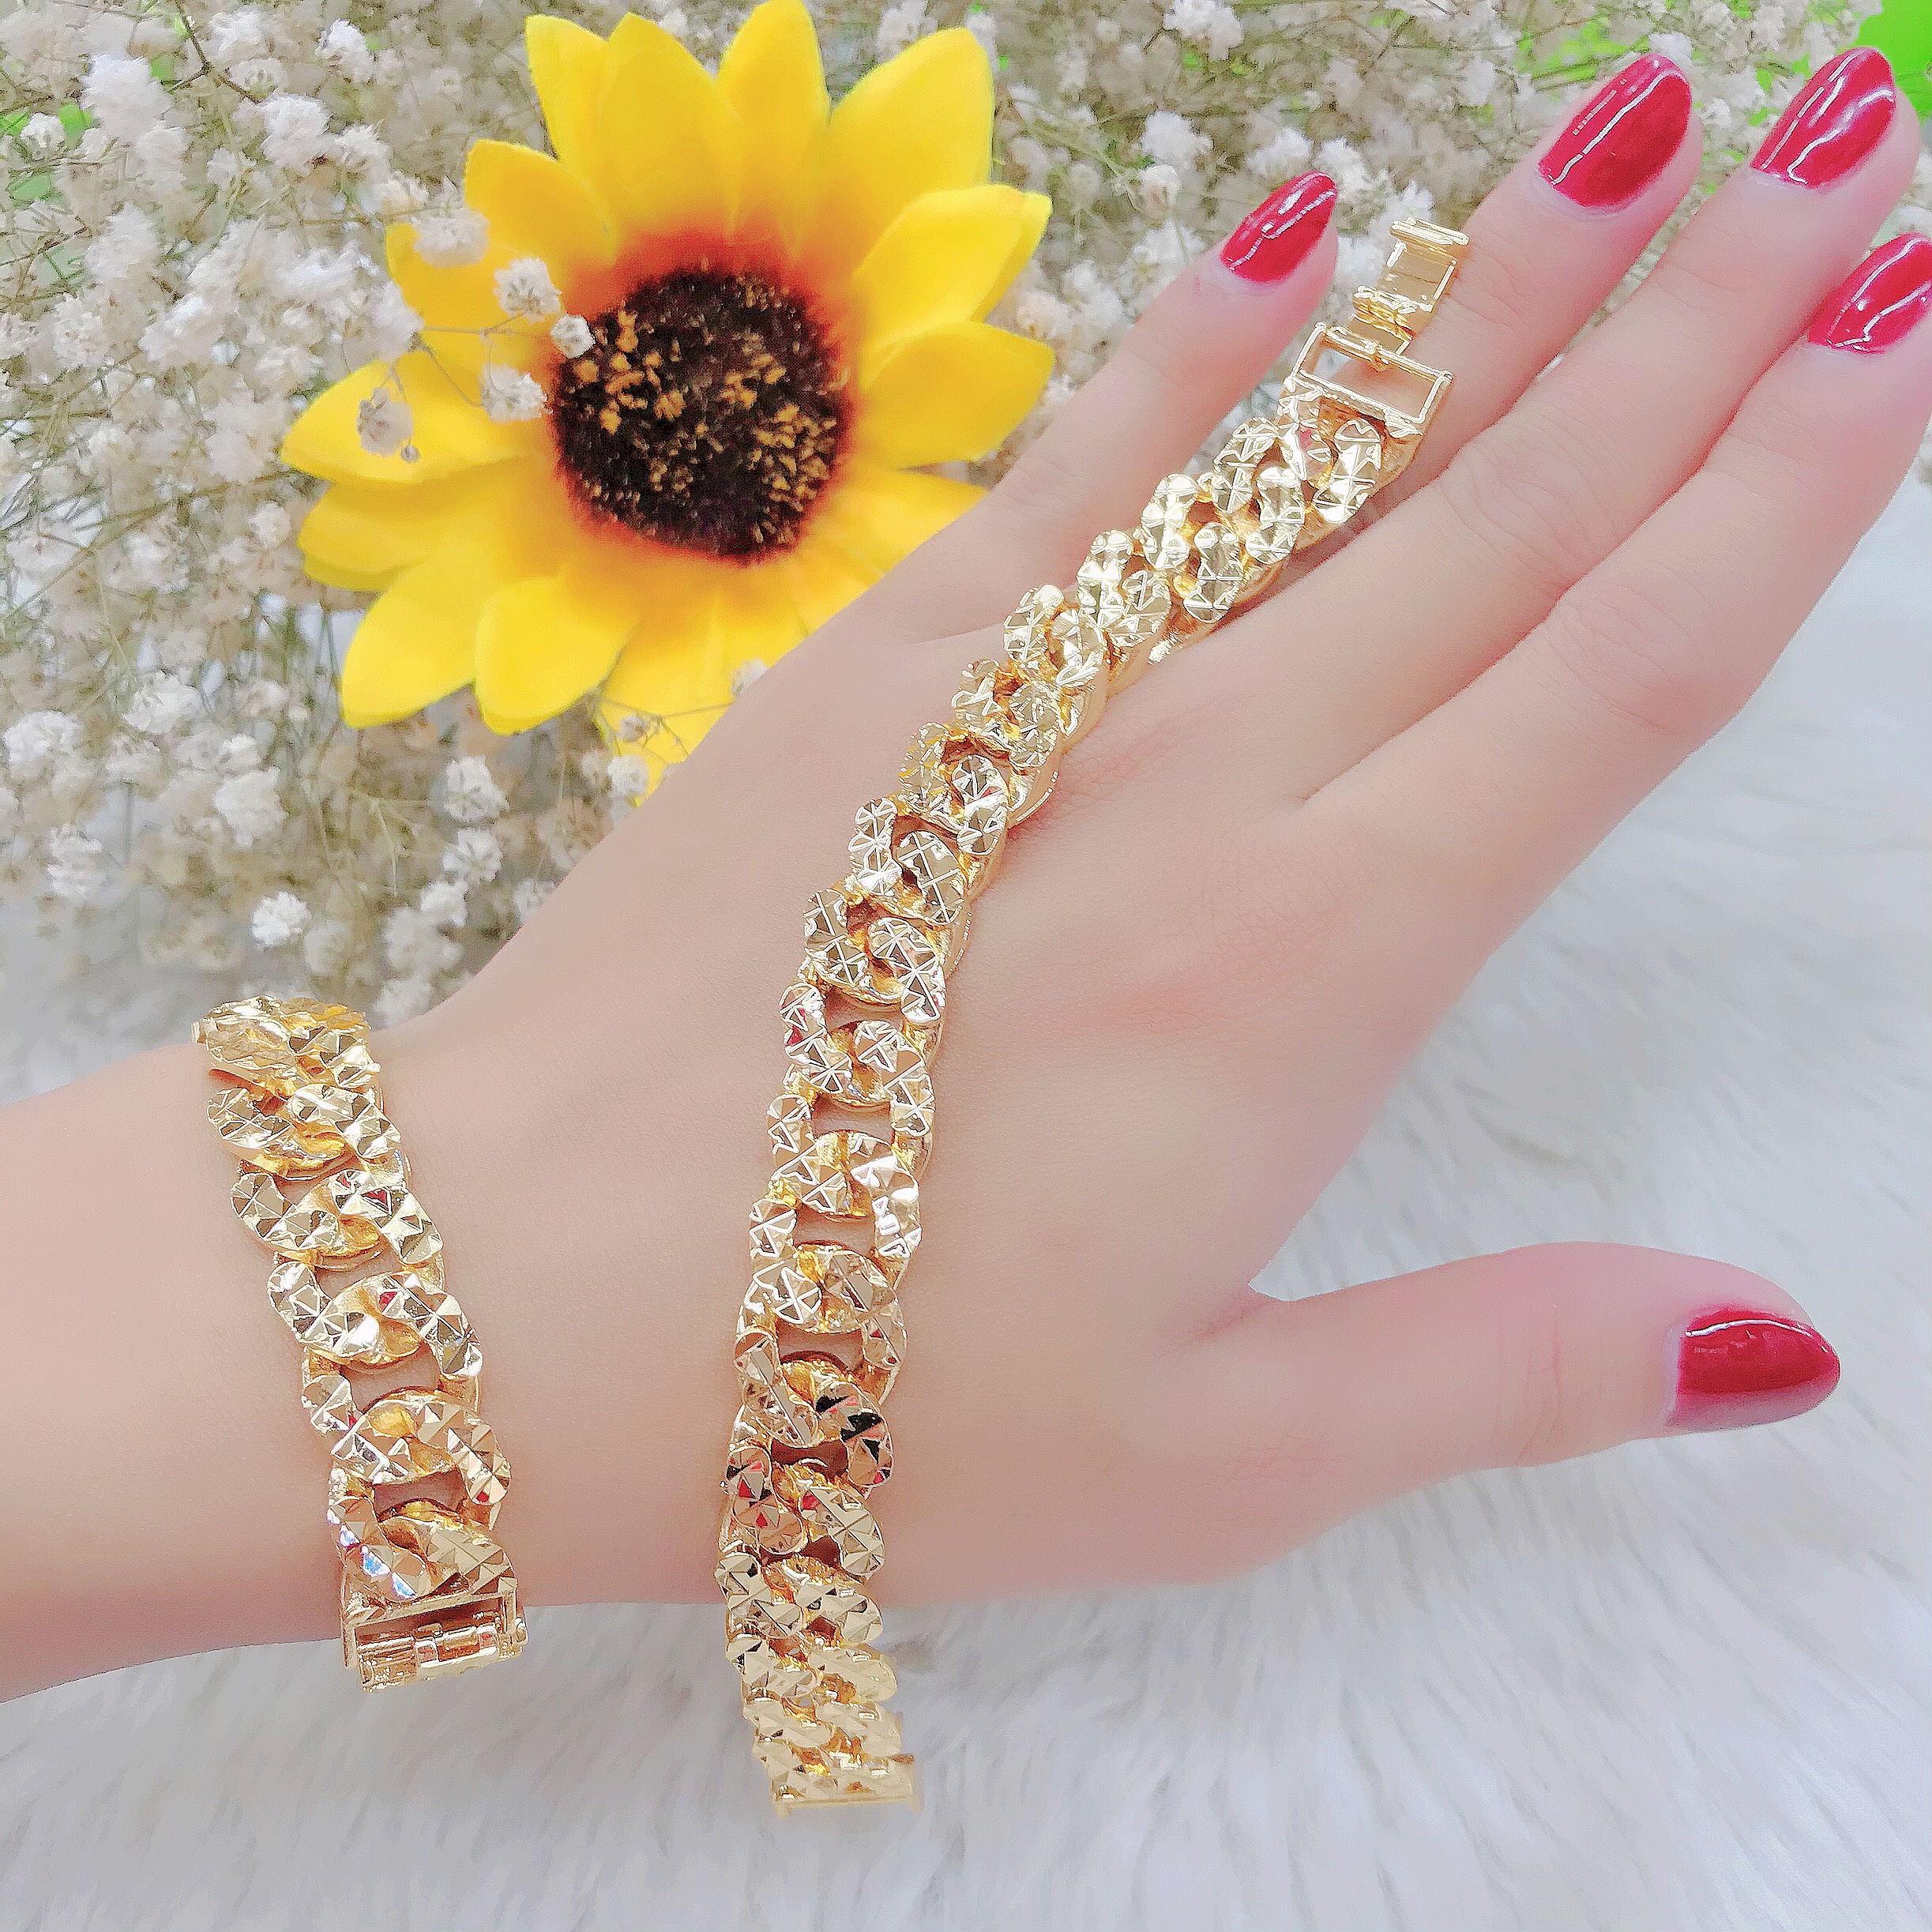 Vòng tay nữ mạ vàng là món quà độc đáo và ý nghĩa dành cho những cô gái yêu thích phụ kiện thời trang. Sự kết hợp giữa chất liệu mạ vàng và kiểu dáng đẹp mắt, vòng tay nữ mạ vàng càng làm nổi bật đẳng cấp và vẻ đẹp của chủ nhân.